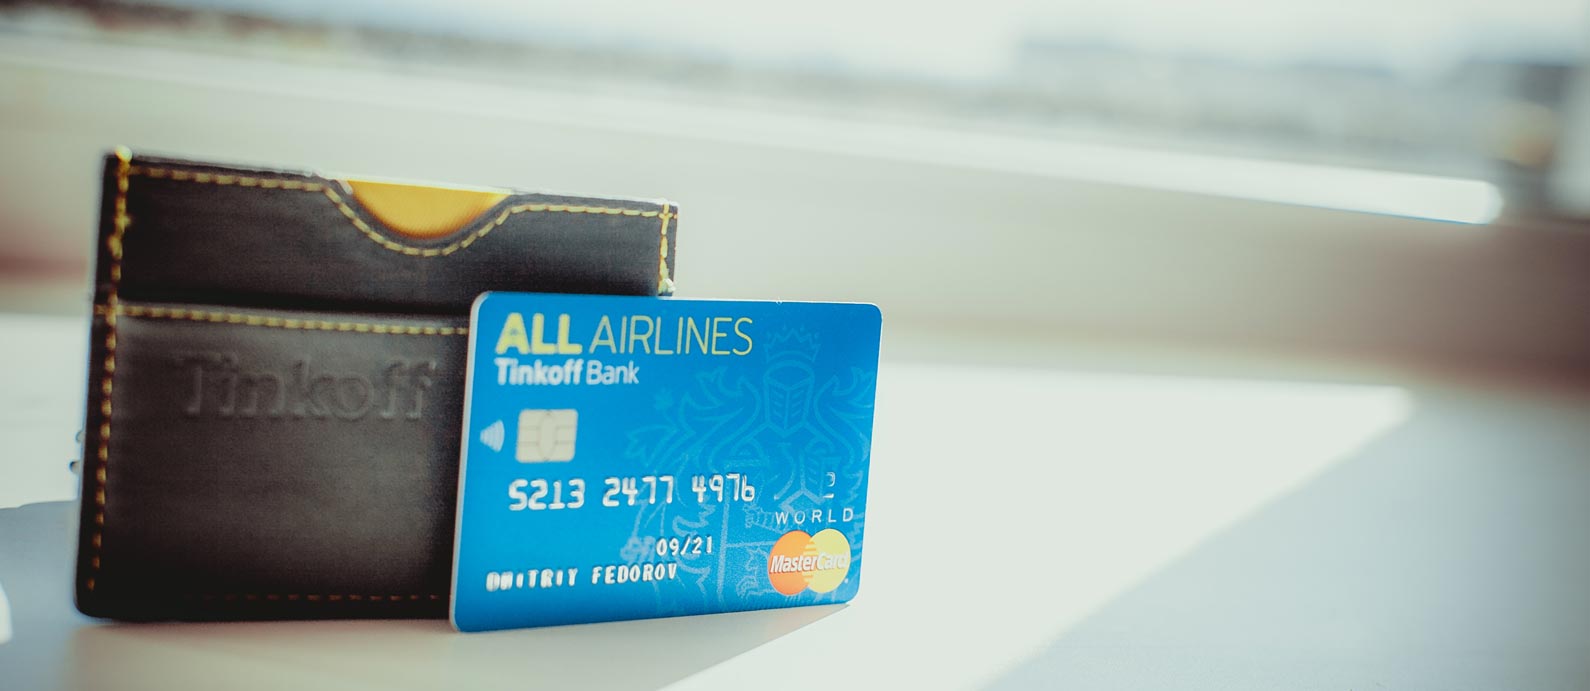 Тинькофф All Airlines — отзыв, условия, плюсы и минусы, как тратить мили и прочие нюансы